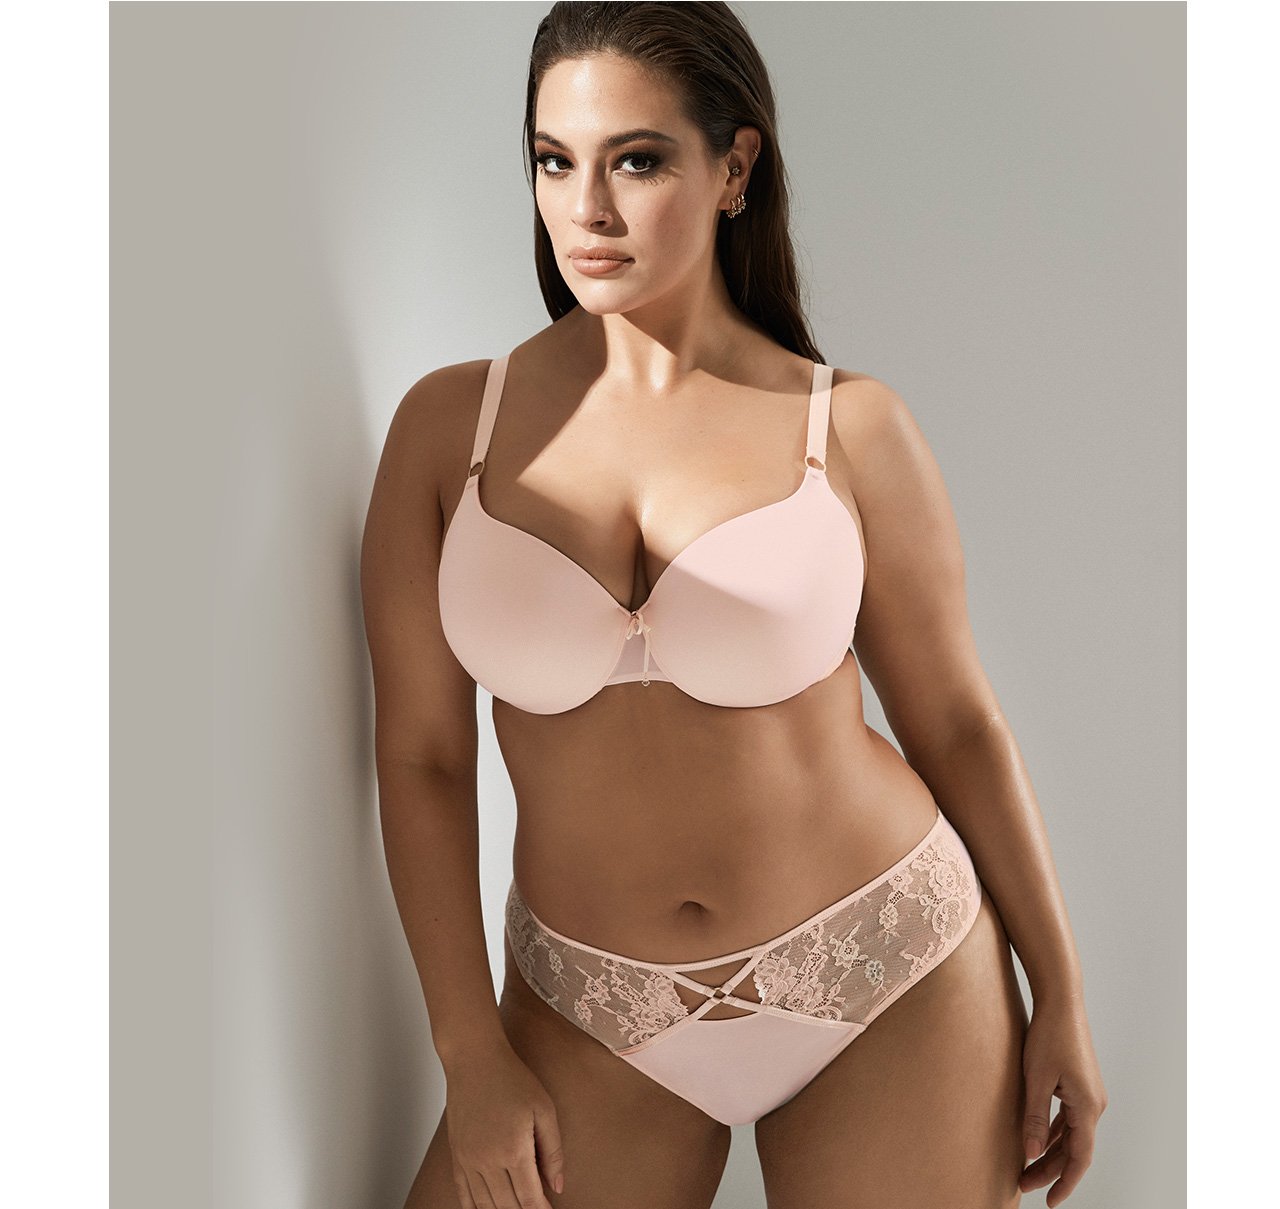 AdditionElle.com: Un-bra-lievable! 30% off Ashley Graham lingerie